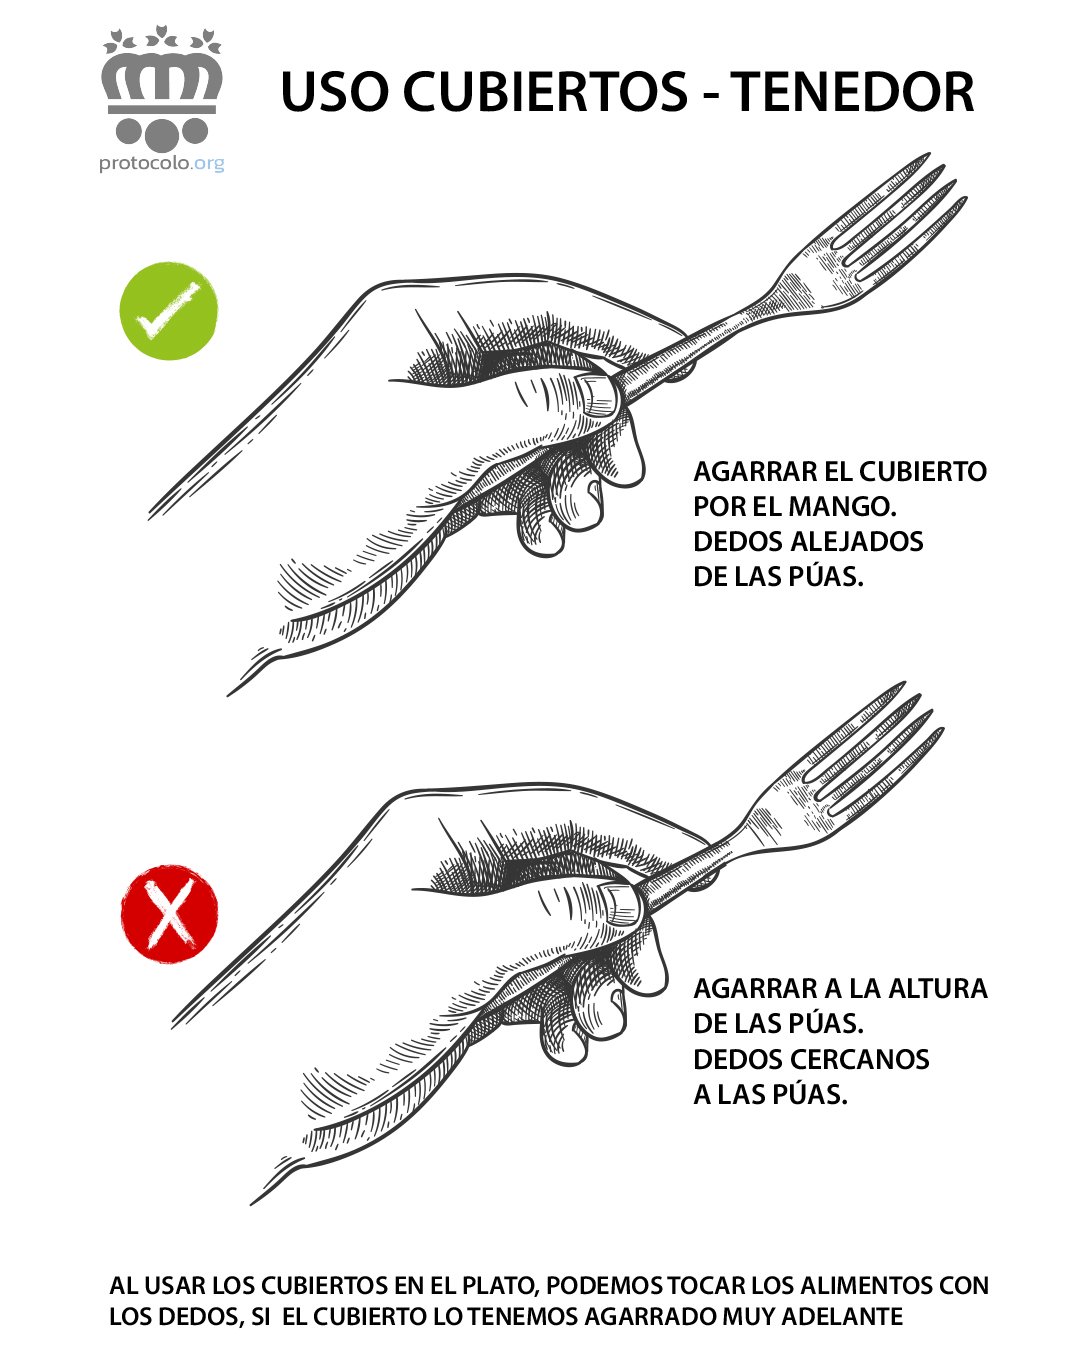 Cómo se debe agarrar el tenedor de forma correcta